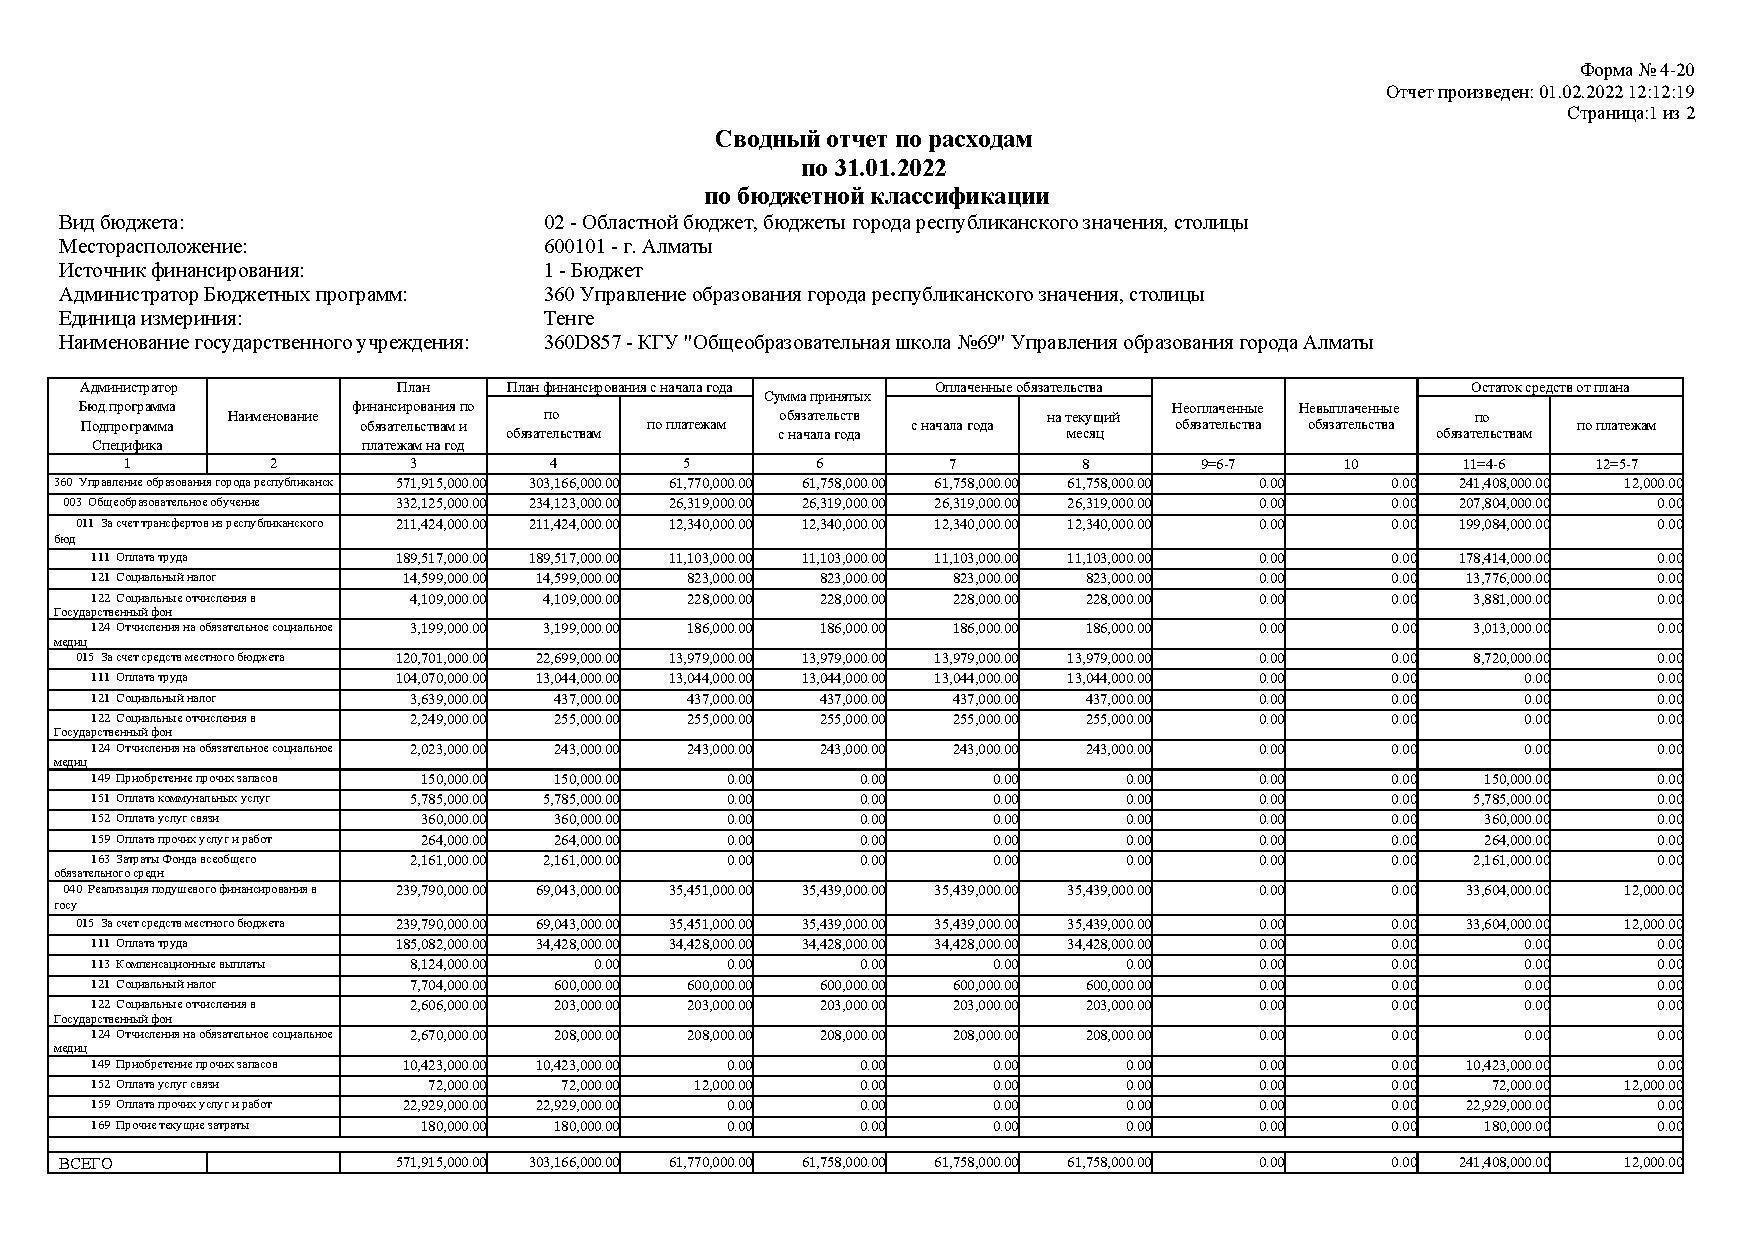 Cводный отчет по расходам по 31.01.2022